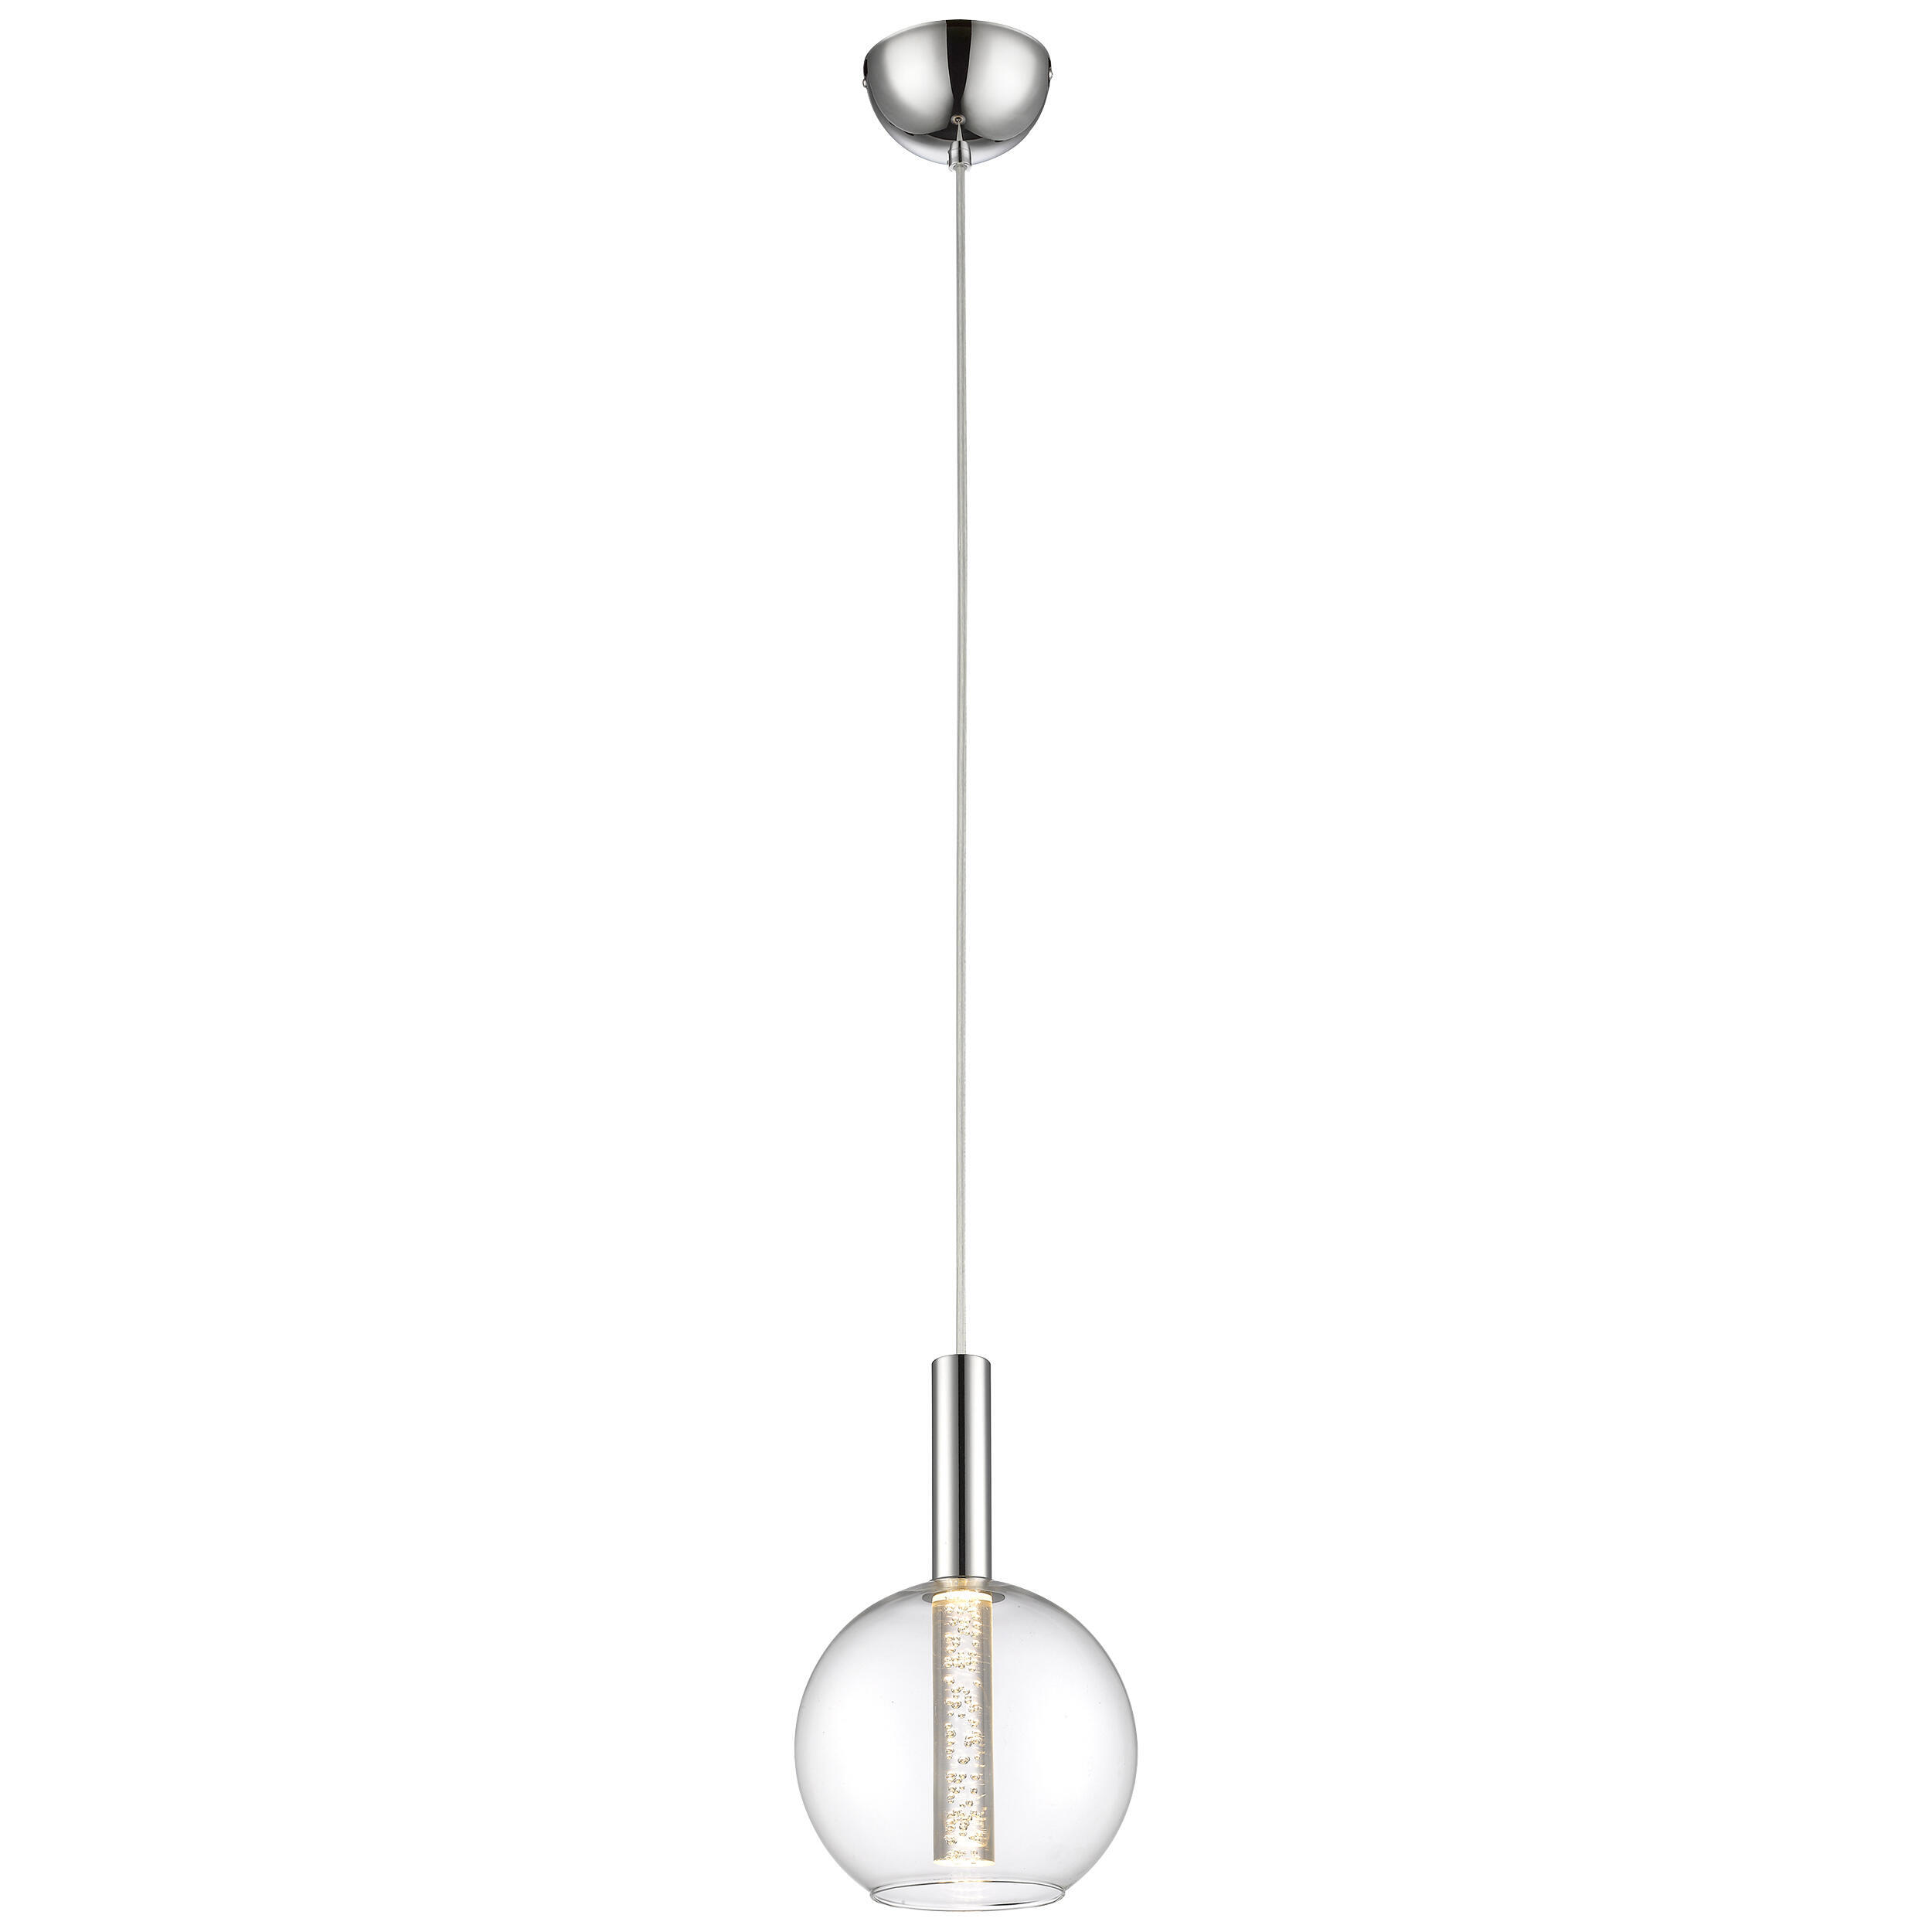 Lampadario Moderno Elegant cromo, in metallo, D. 18 cm, L. 152 cm, BRILLIANT - 4